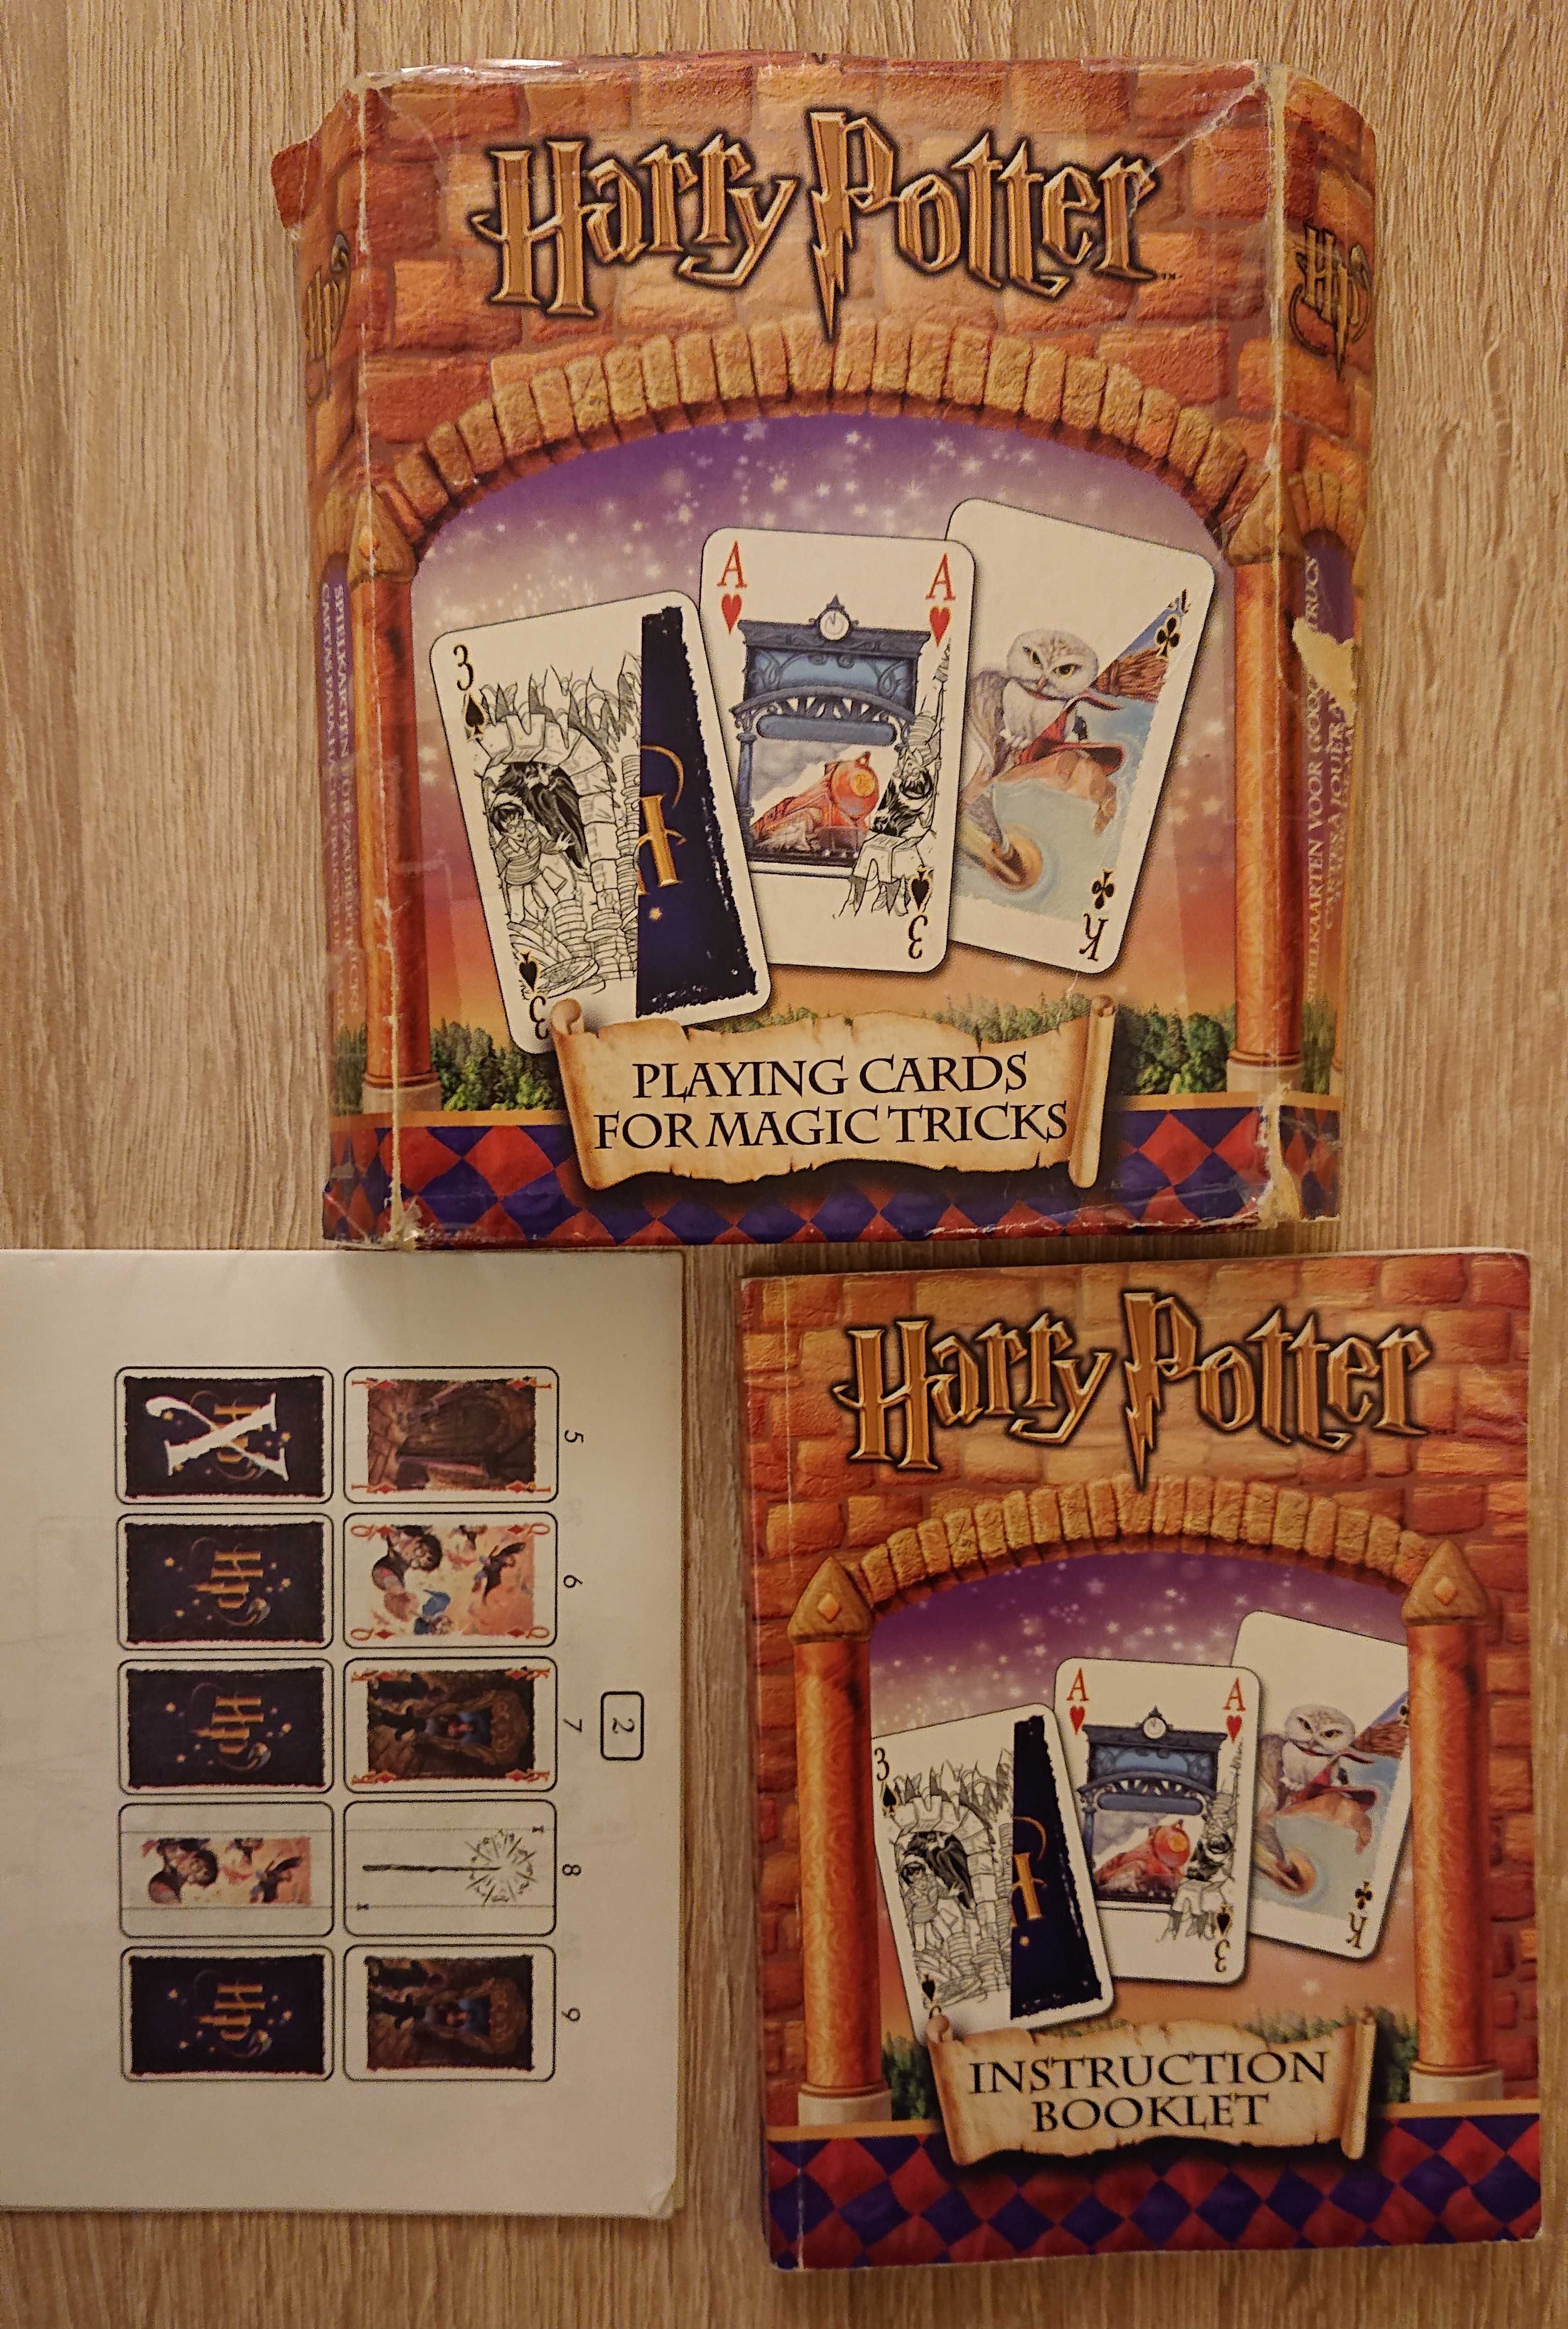 Harry Potter Karty Do Magicznych Sztuczek Karcianych